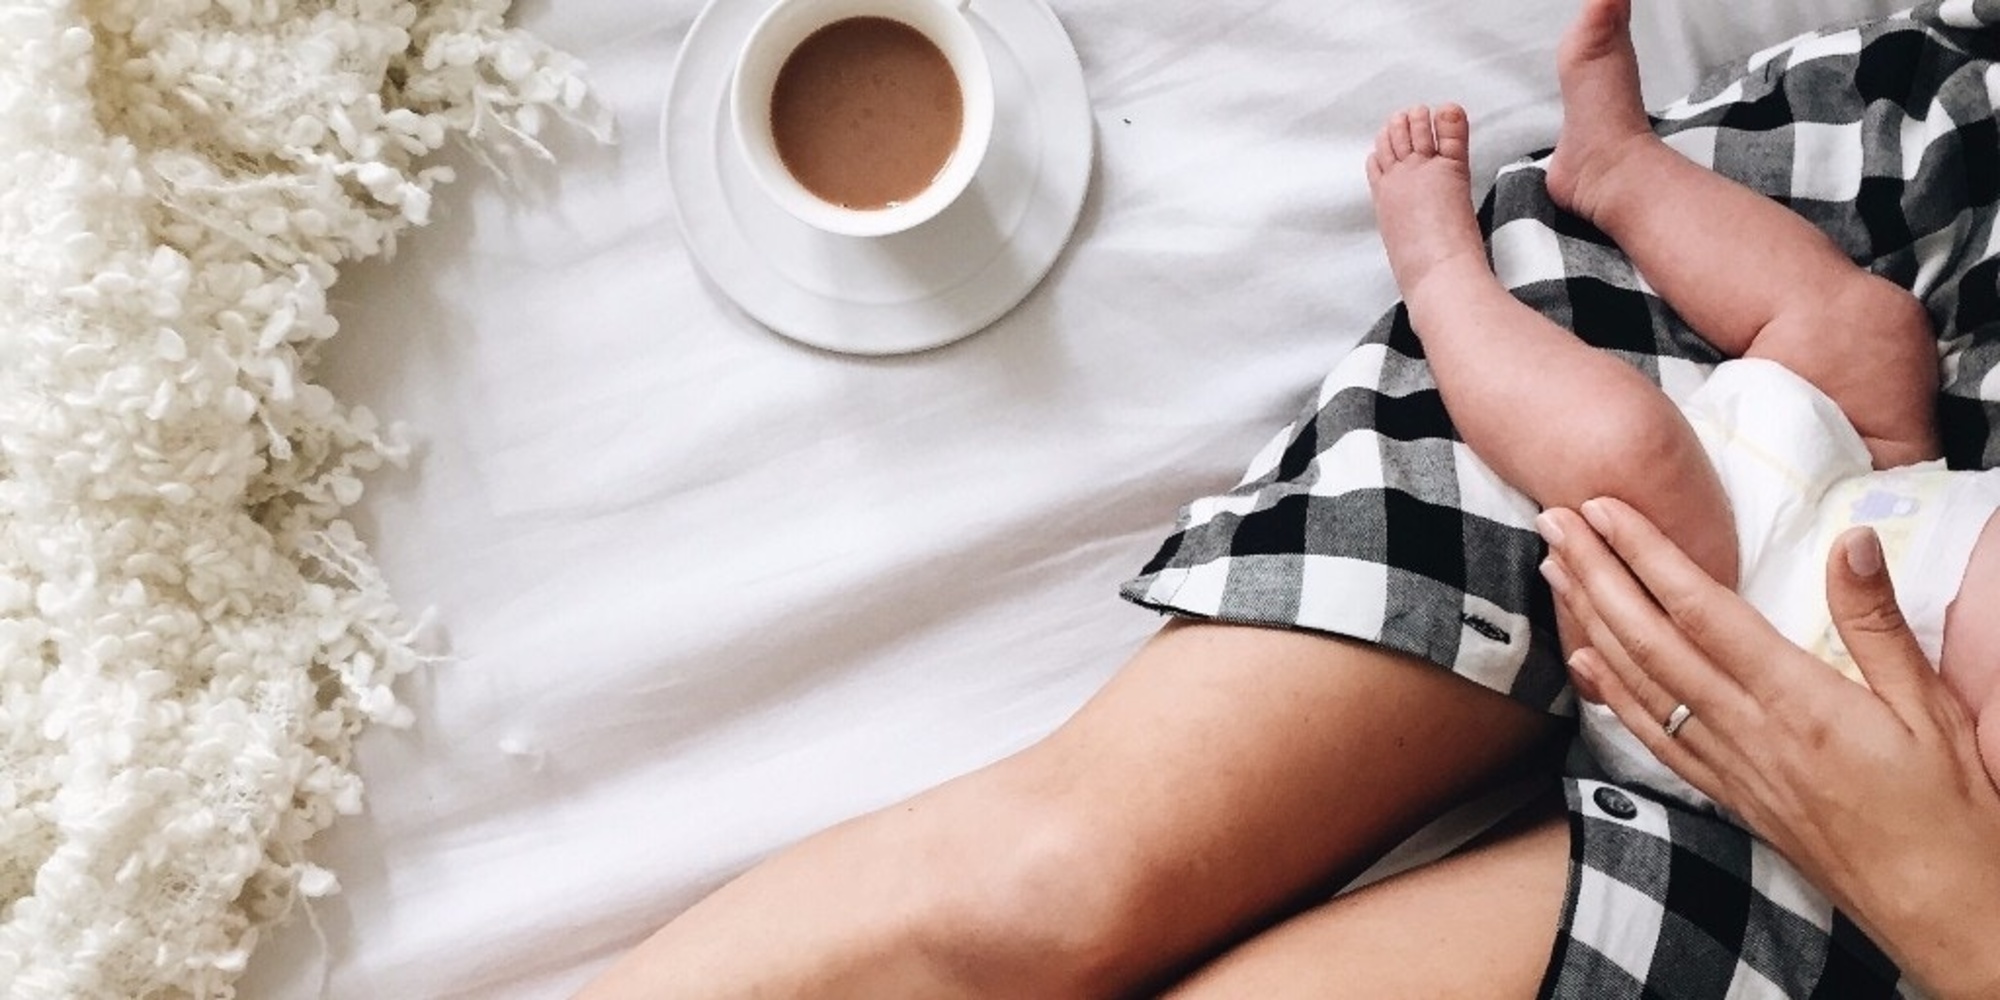 Кофе при грудном вскармливании: можно ли пить кофе кормящей маме